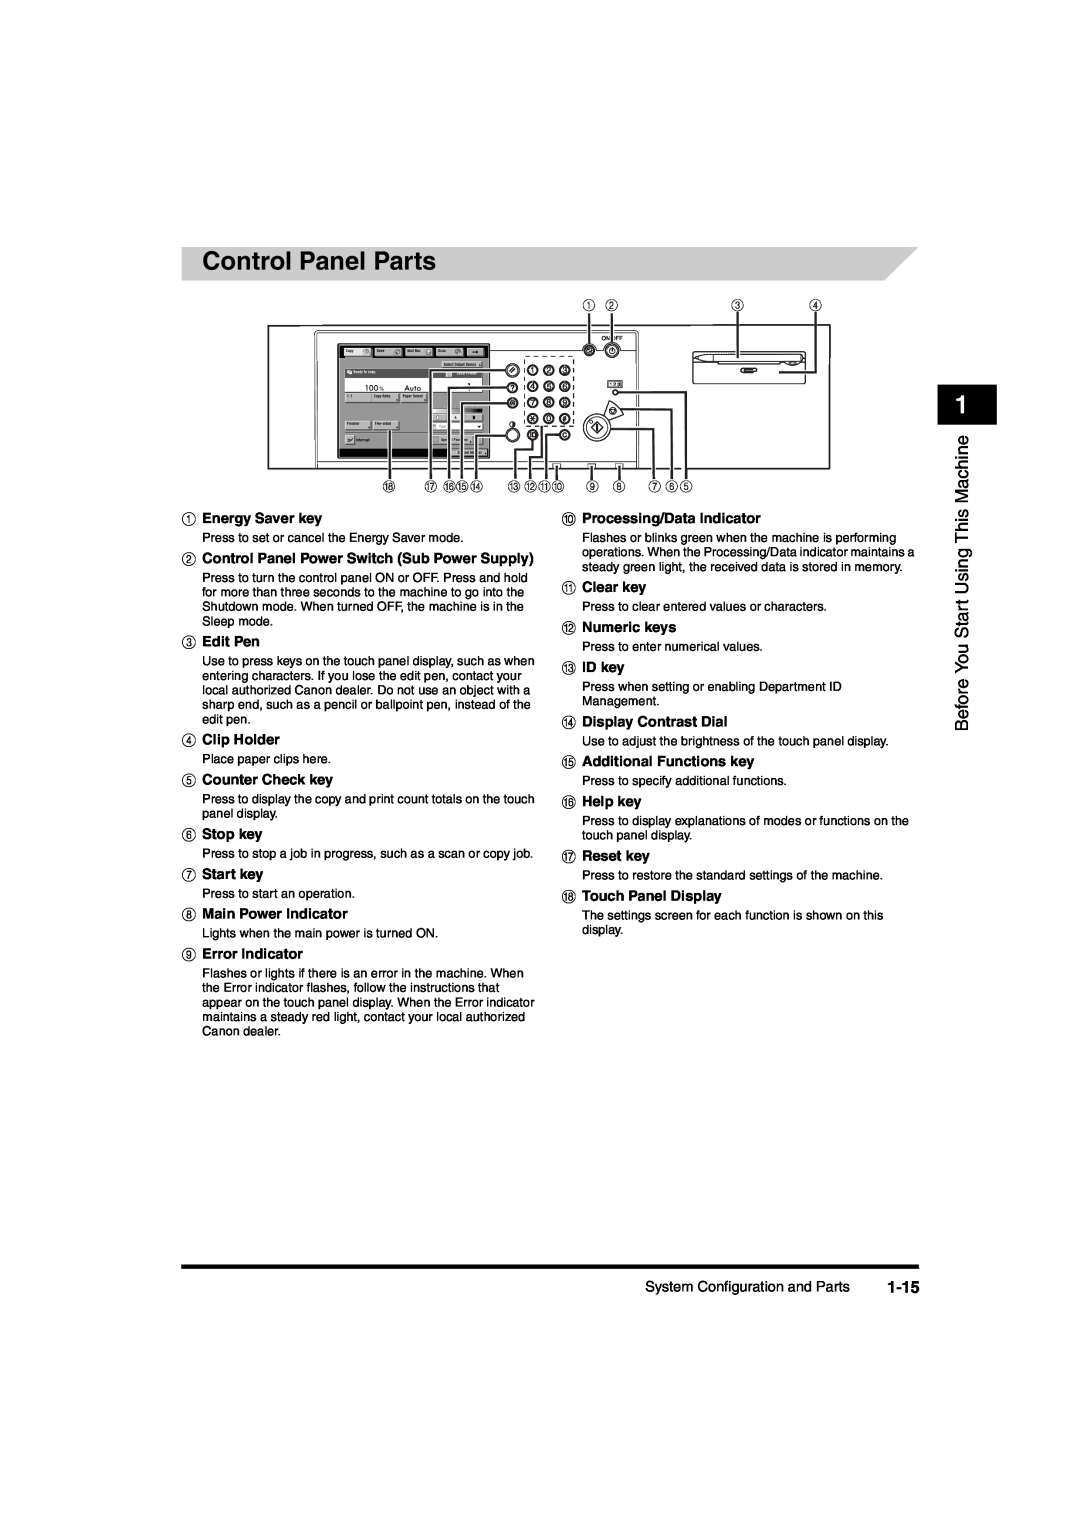 Canon iR6570 manual Control Panel Parts, 1-15 